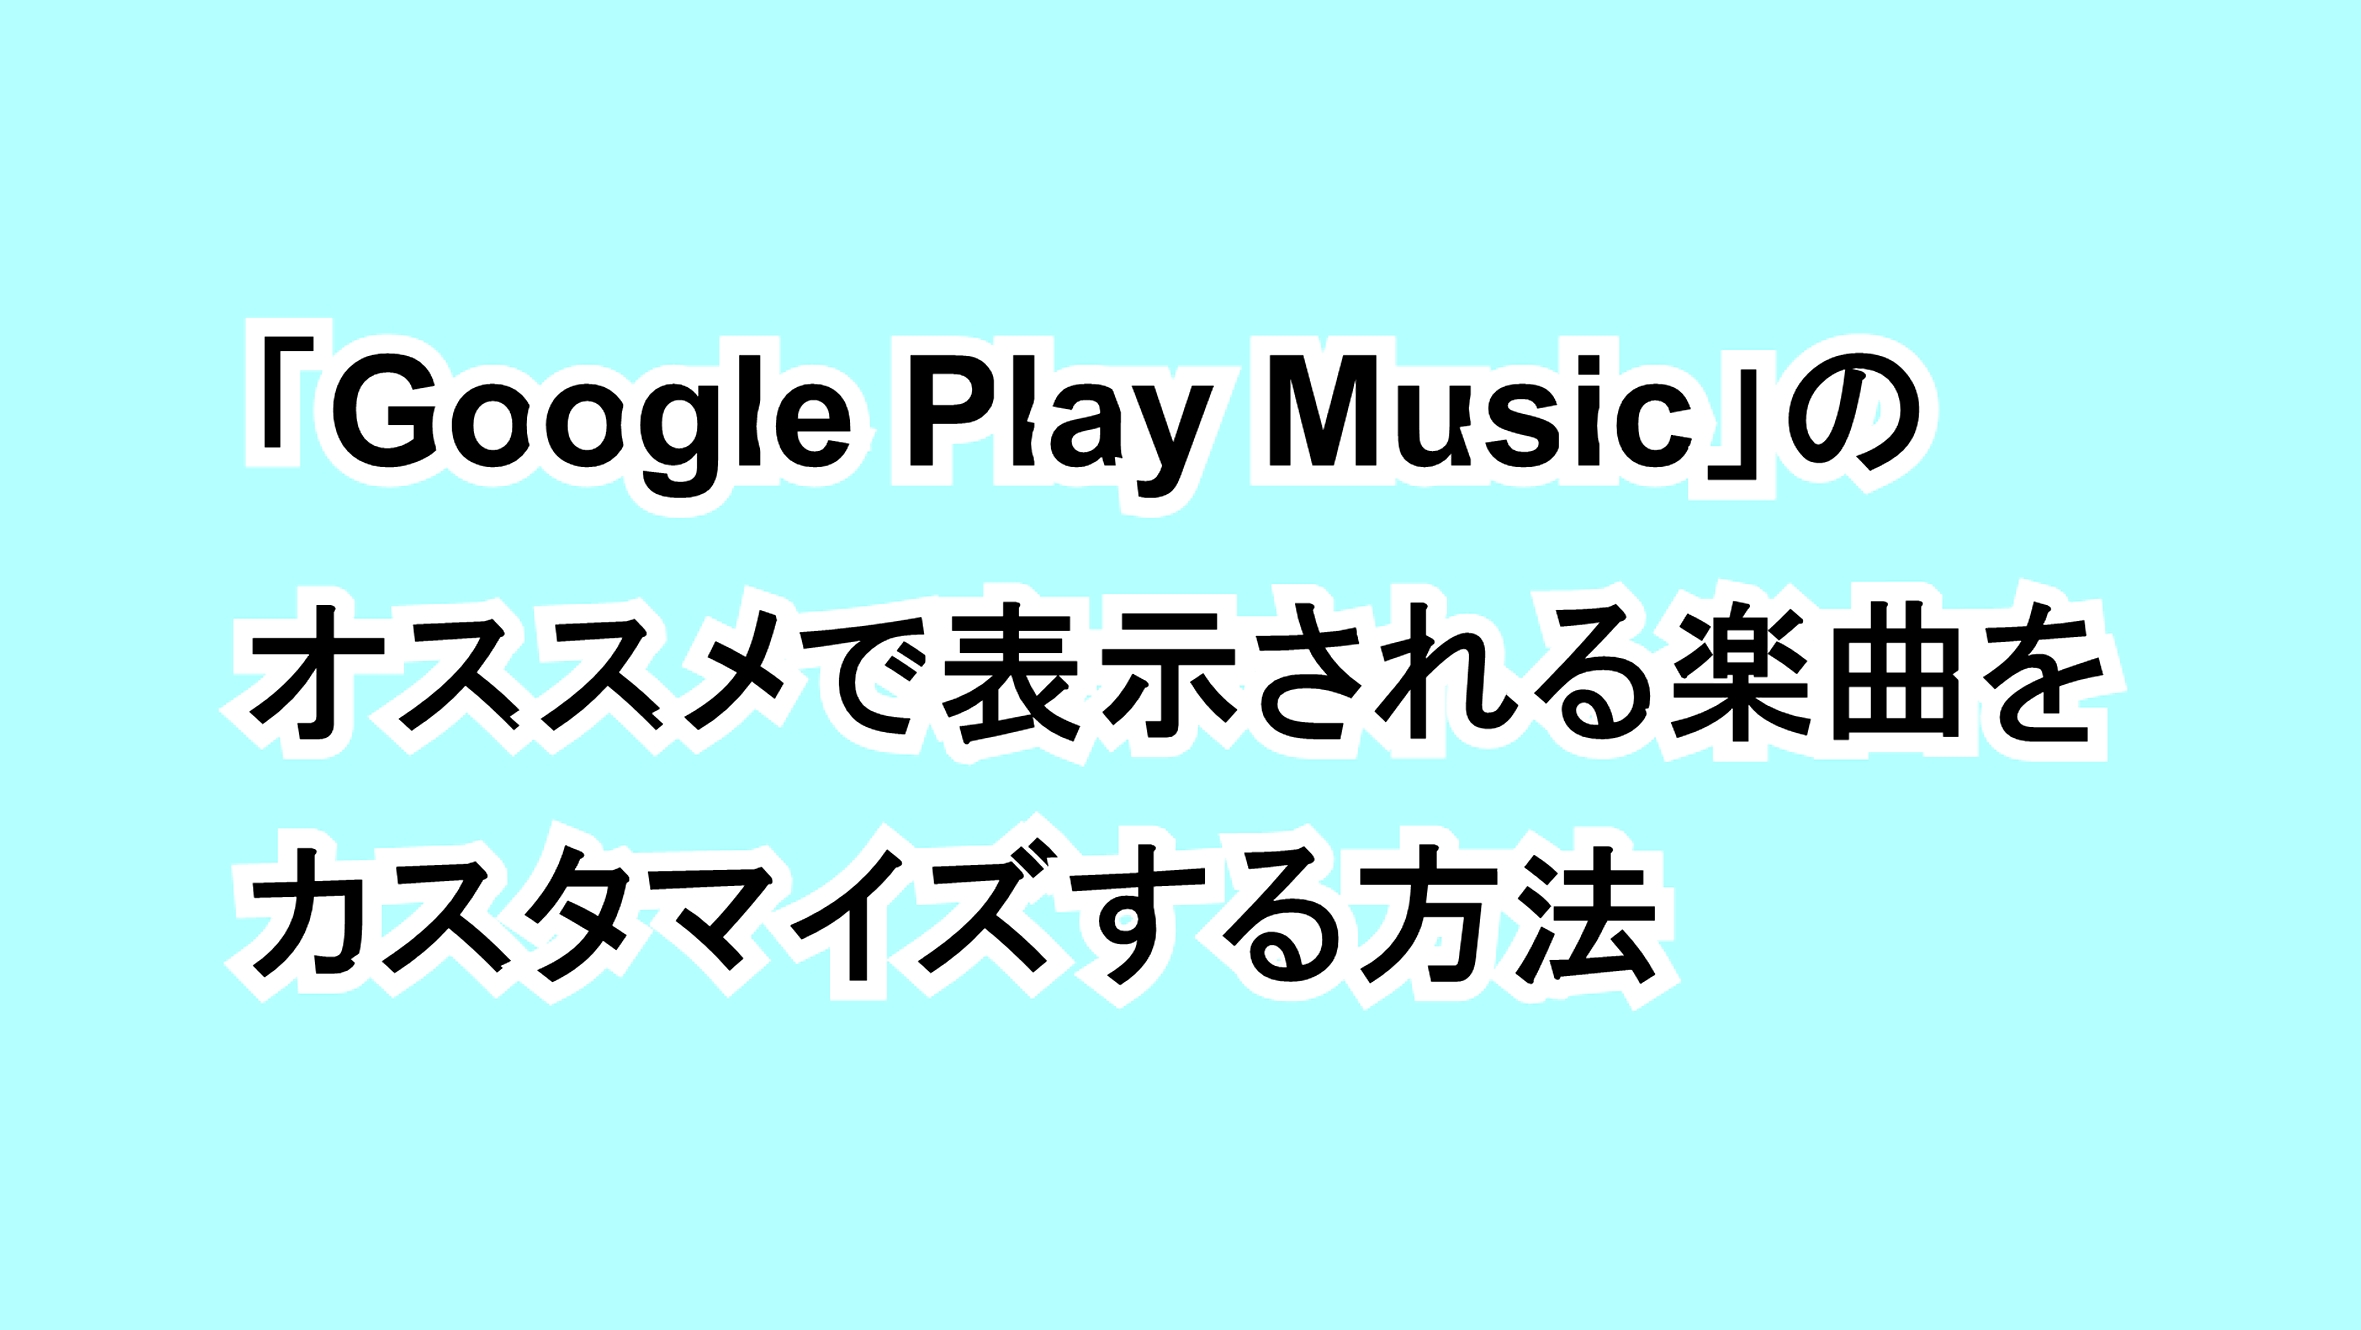 「Google Play Music」のおすすめで表示される楽曲をカスタマイズする方法